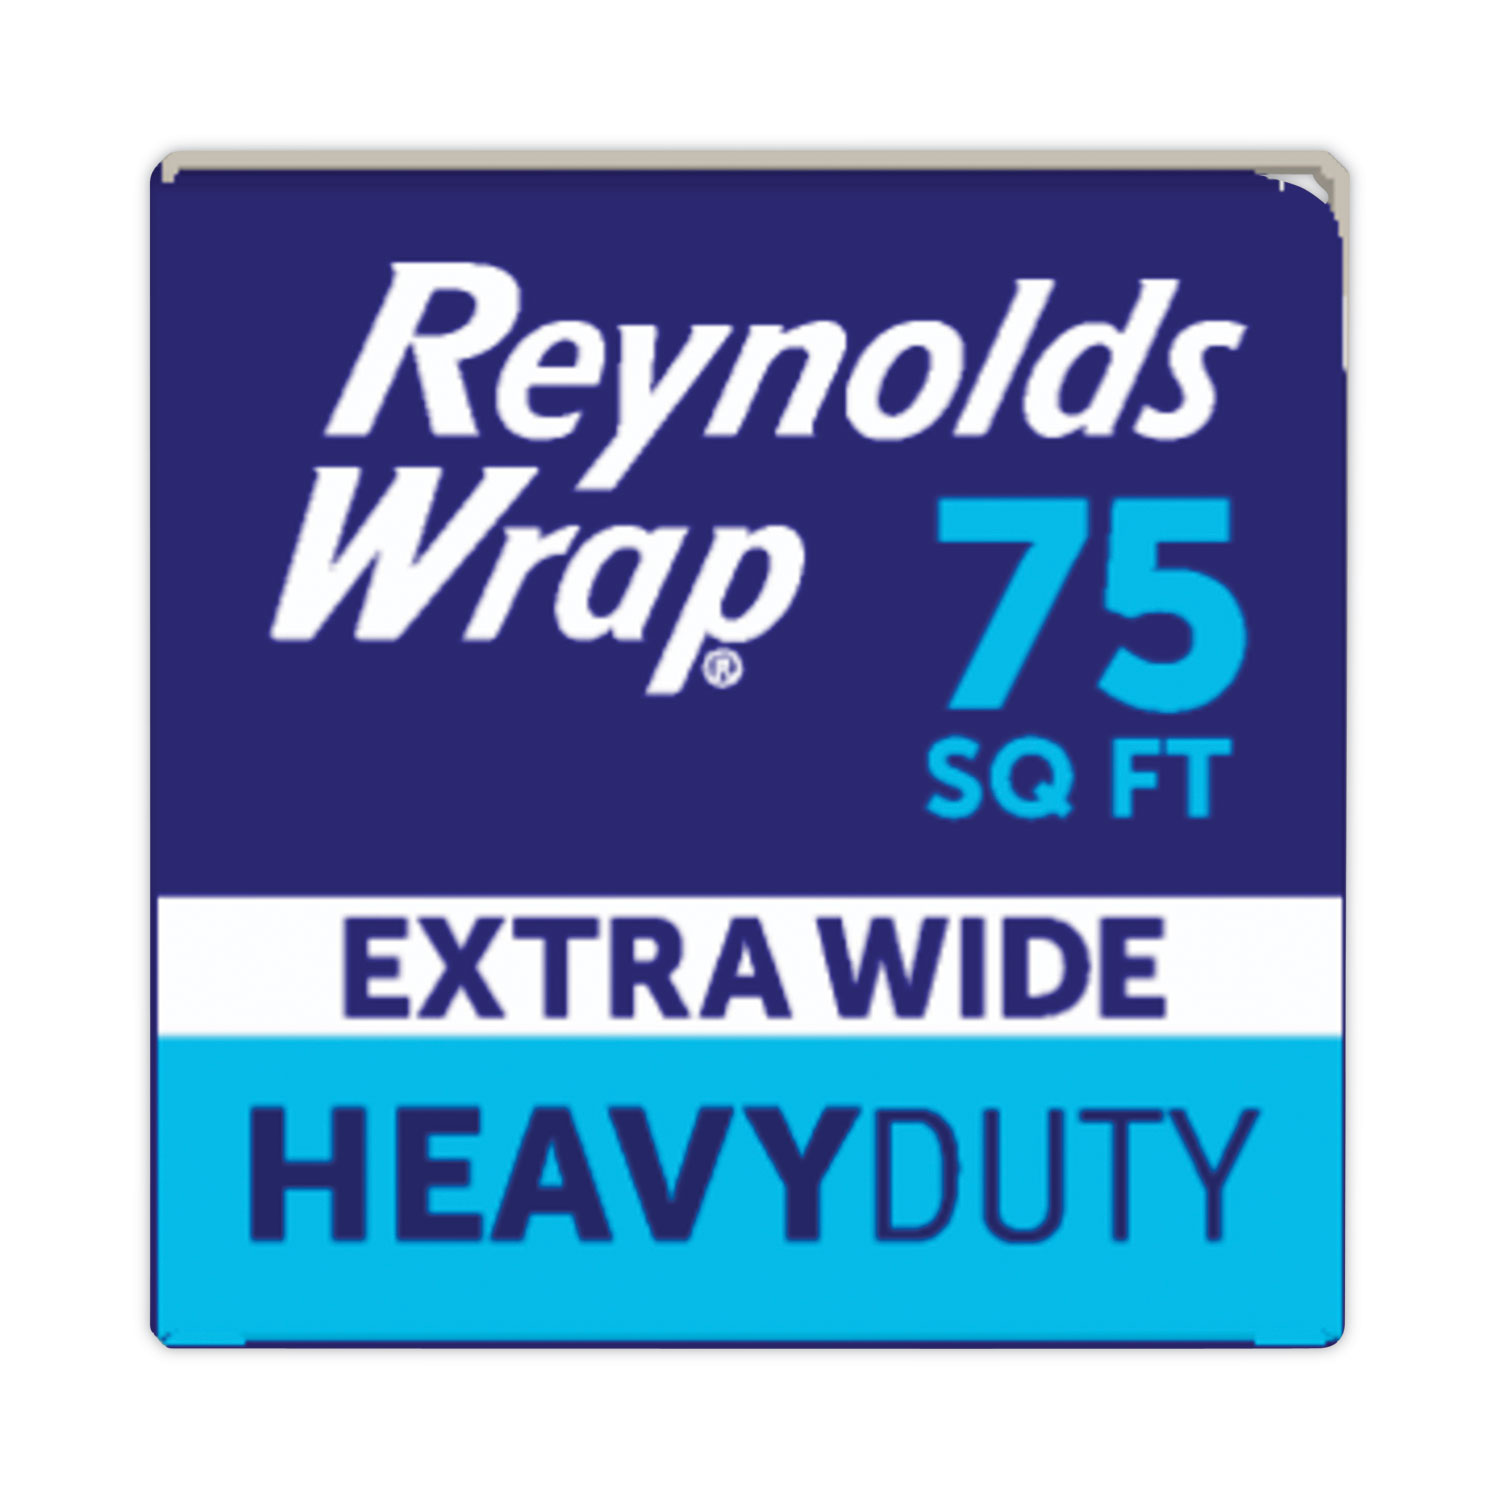 Heavy Duty Aluminum Foil Roll, 18 x 75 ft, Silver - Zerbee